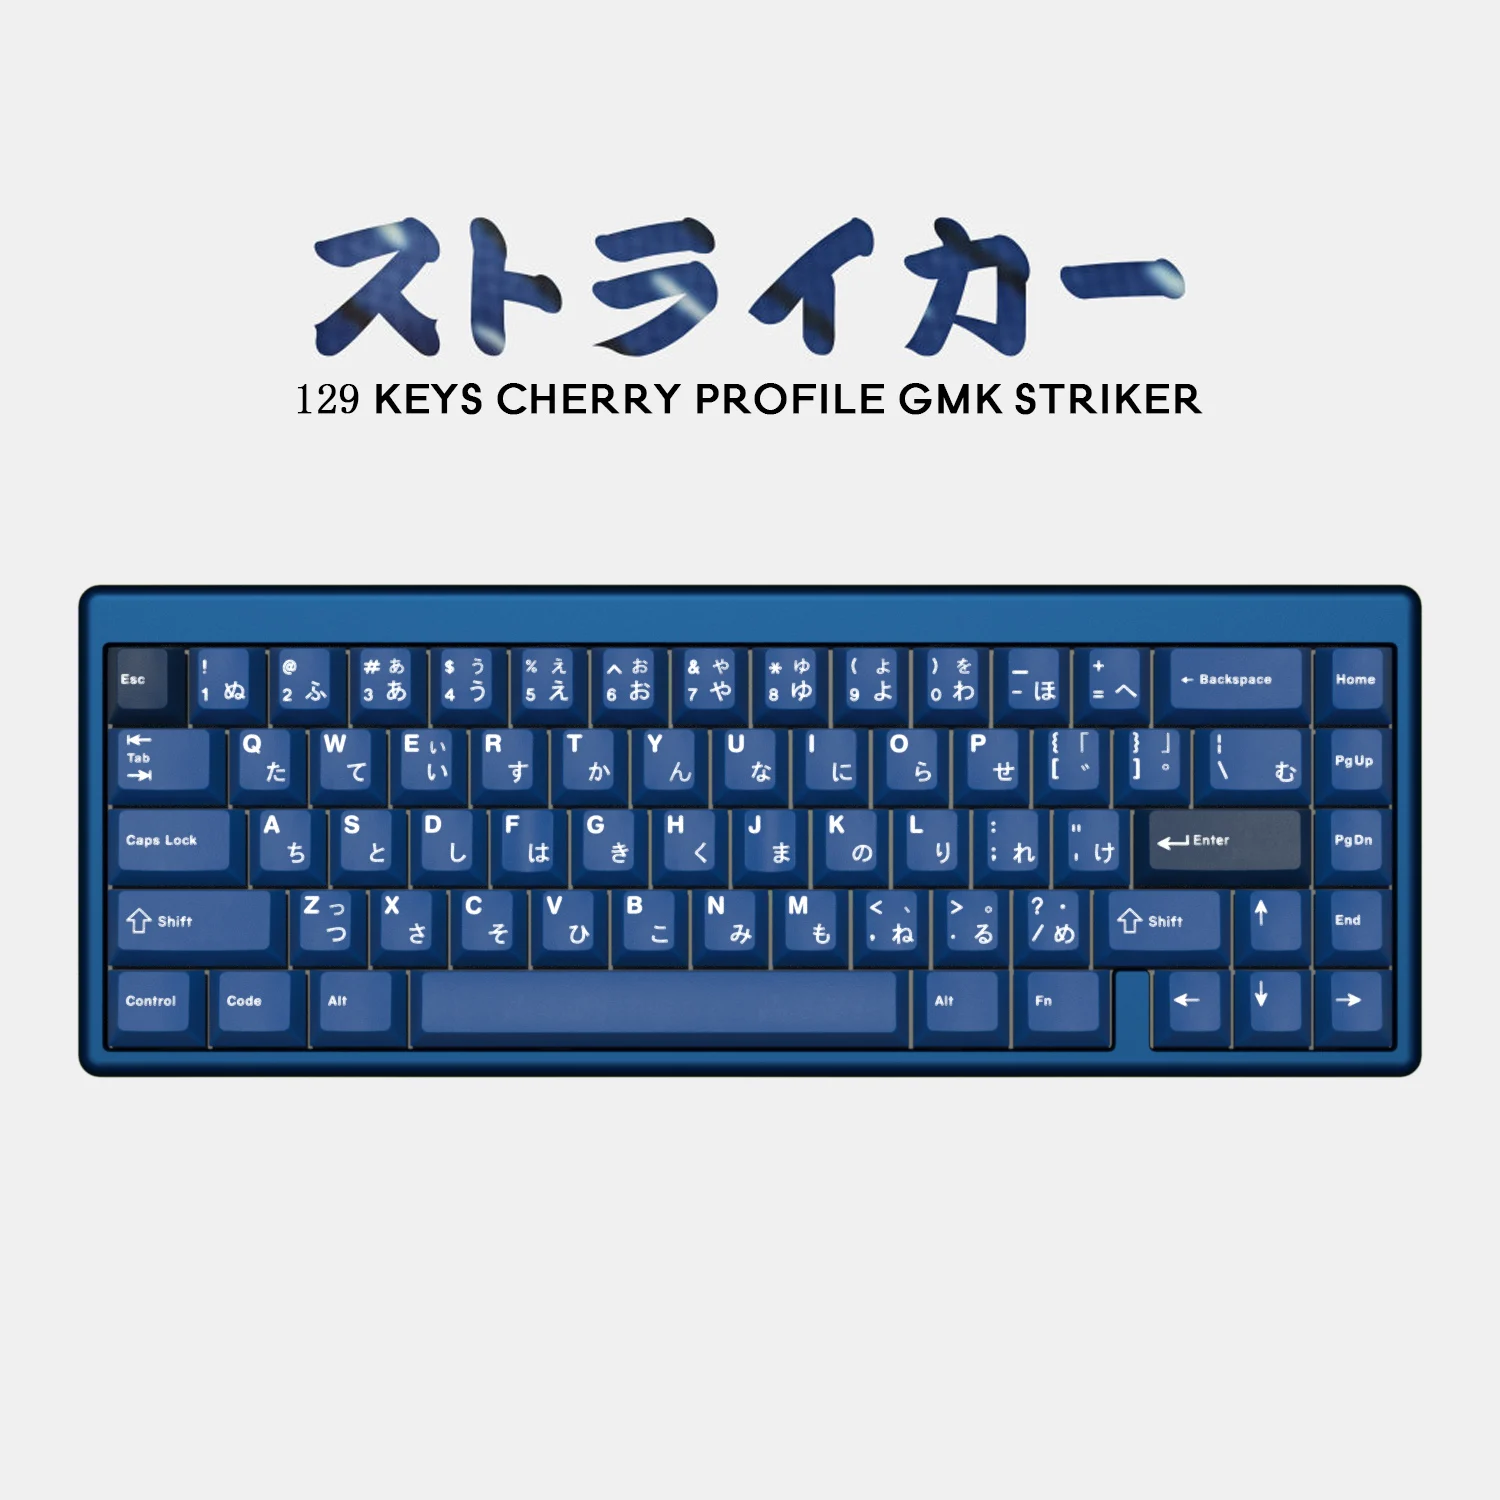 

Клавиатура GMK Striker PBT с 129 клавишами, персонализированные клавиши Cherry Profile DYE-SUB для механической клавиатуры GMMK pro